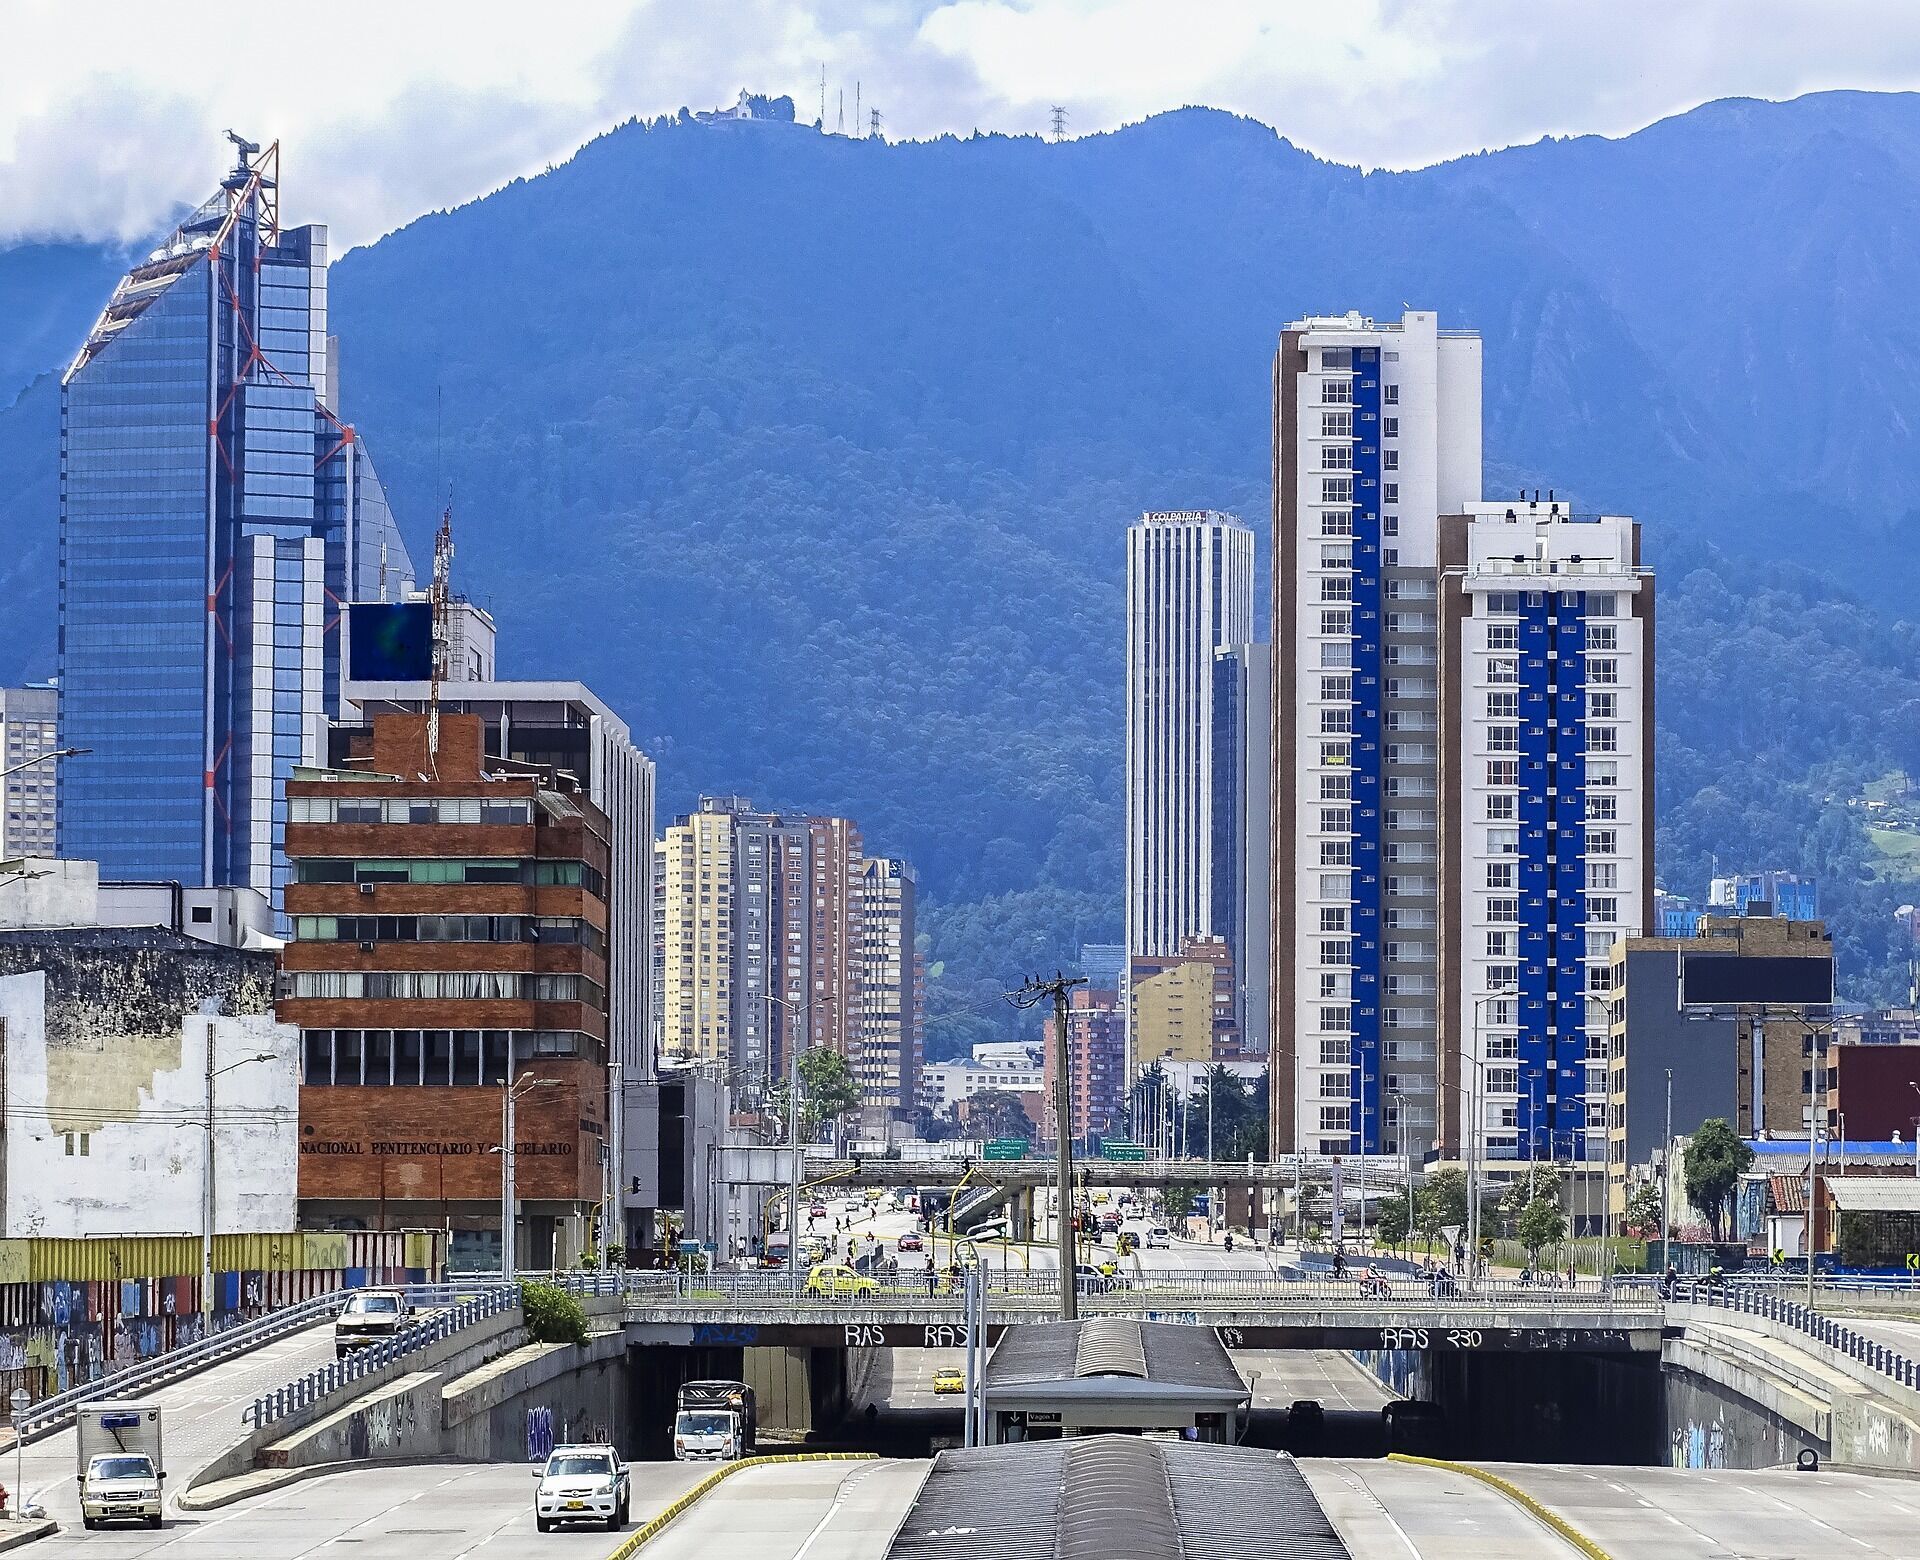 В поход по горным тропам Боготы: подготовка и особенности путешествия в окрестностях столицы Колумбии